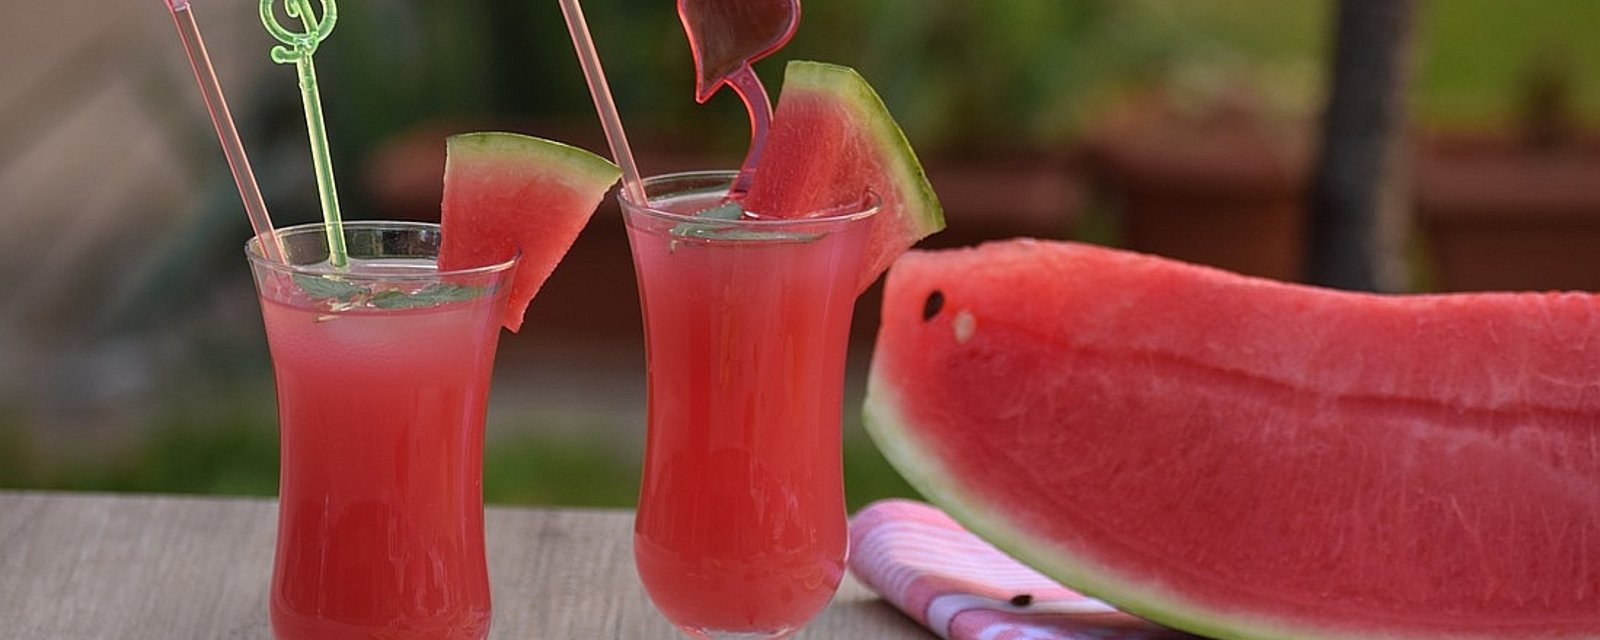 Margaritas roses au melon d'eau